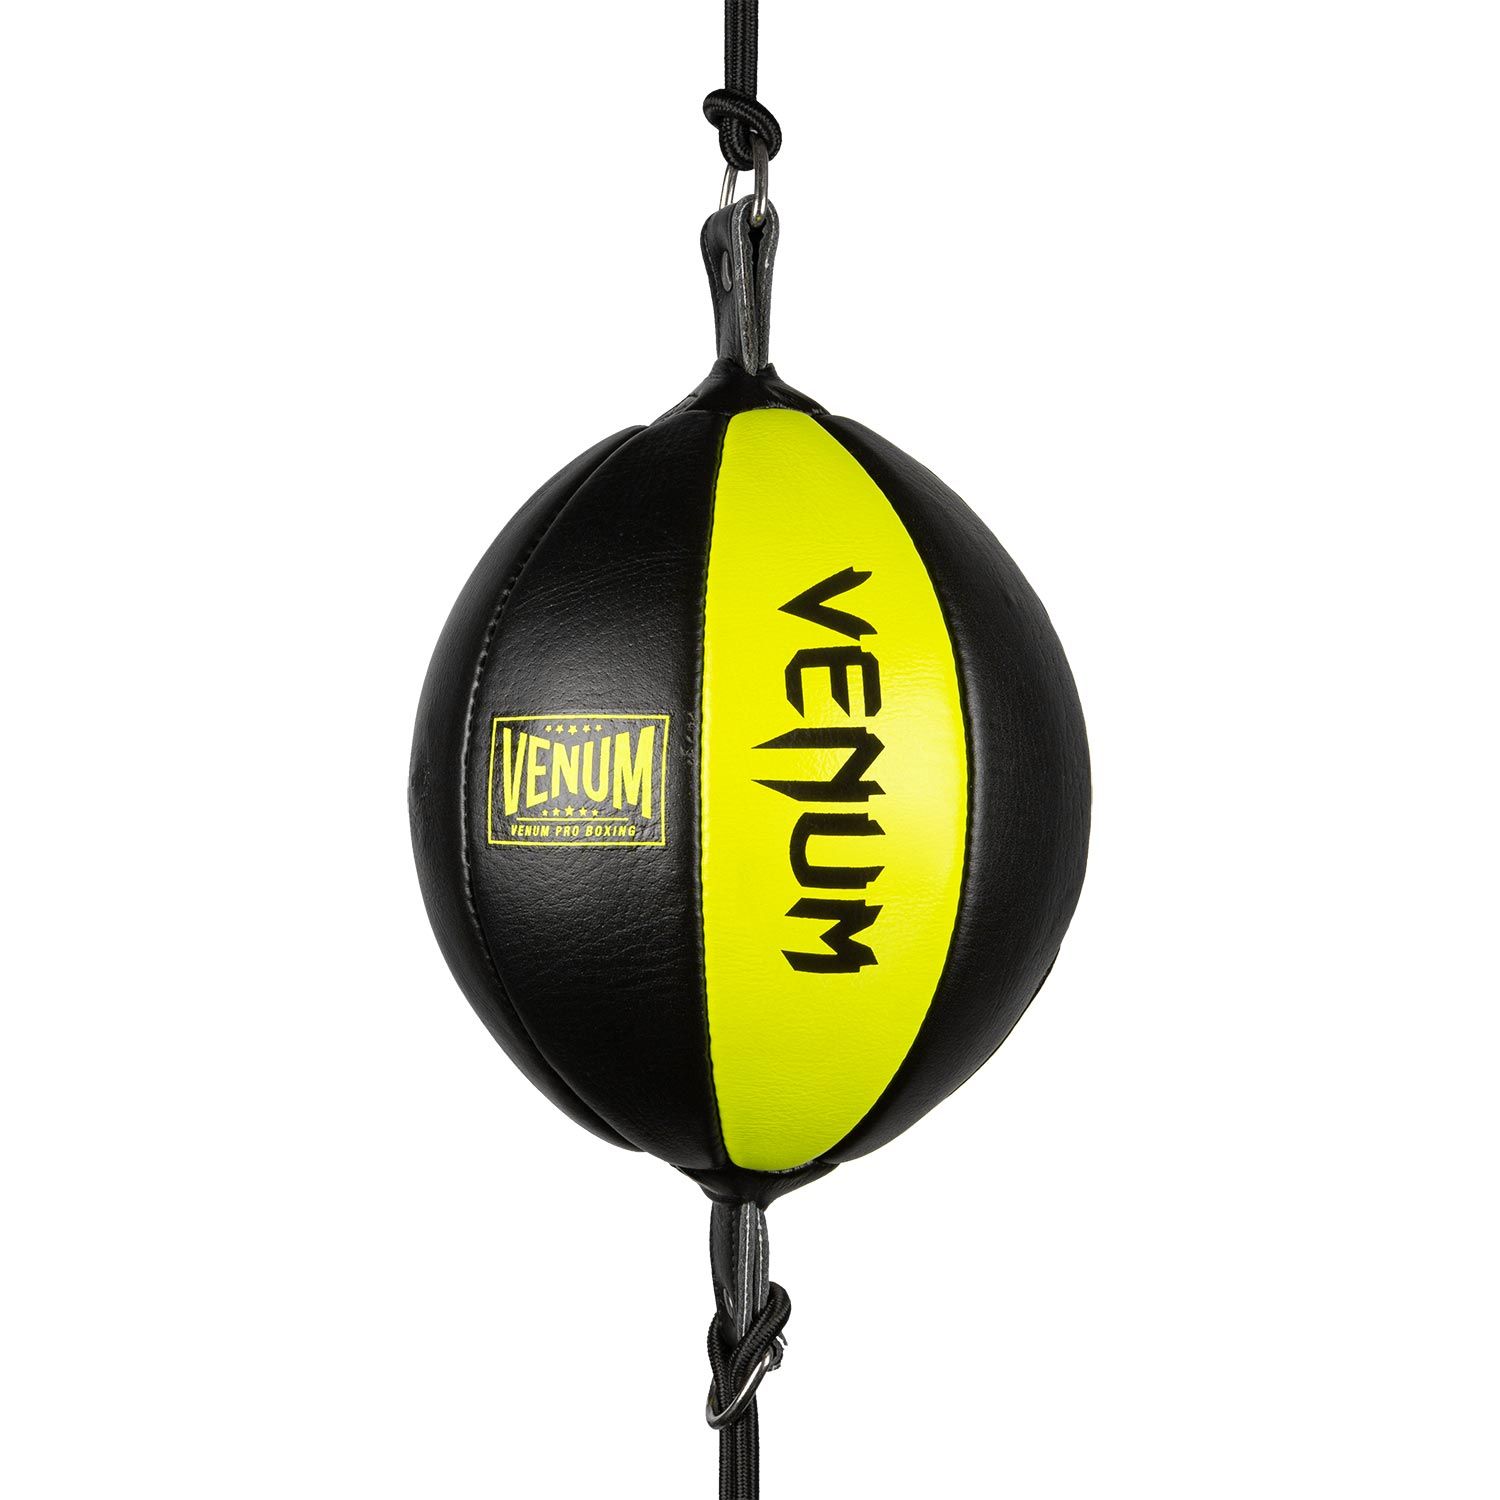 Ballon ovale double attache Venum Hurricane - Noir/Jaune